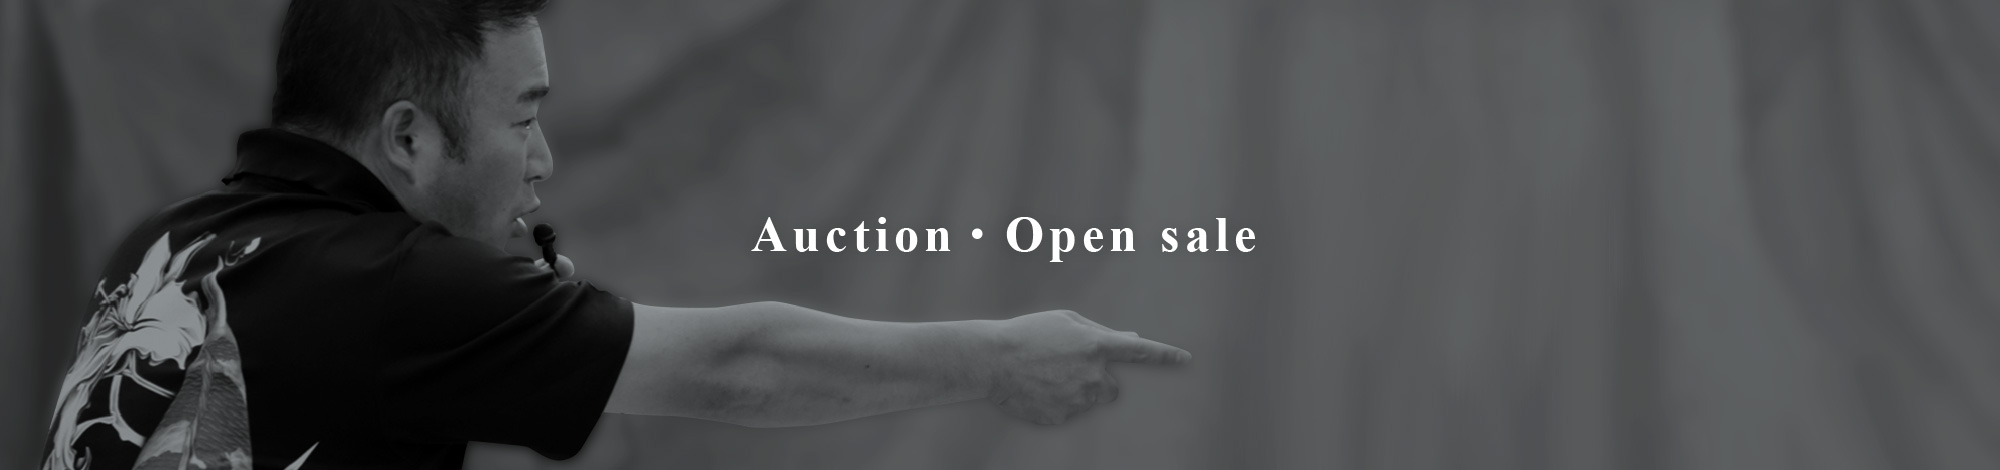 Auction Spot sale fair